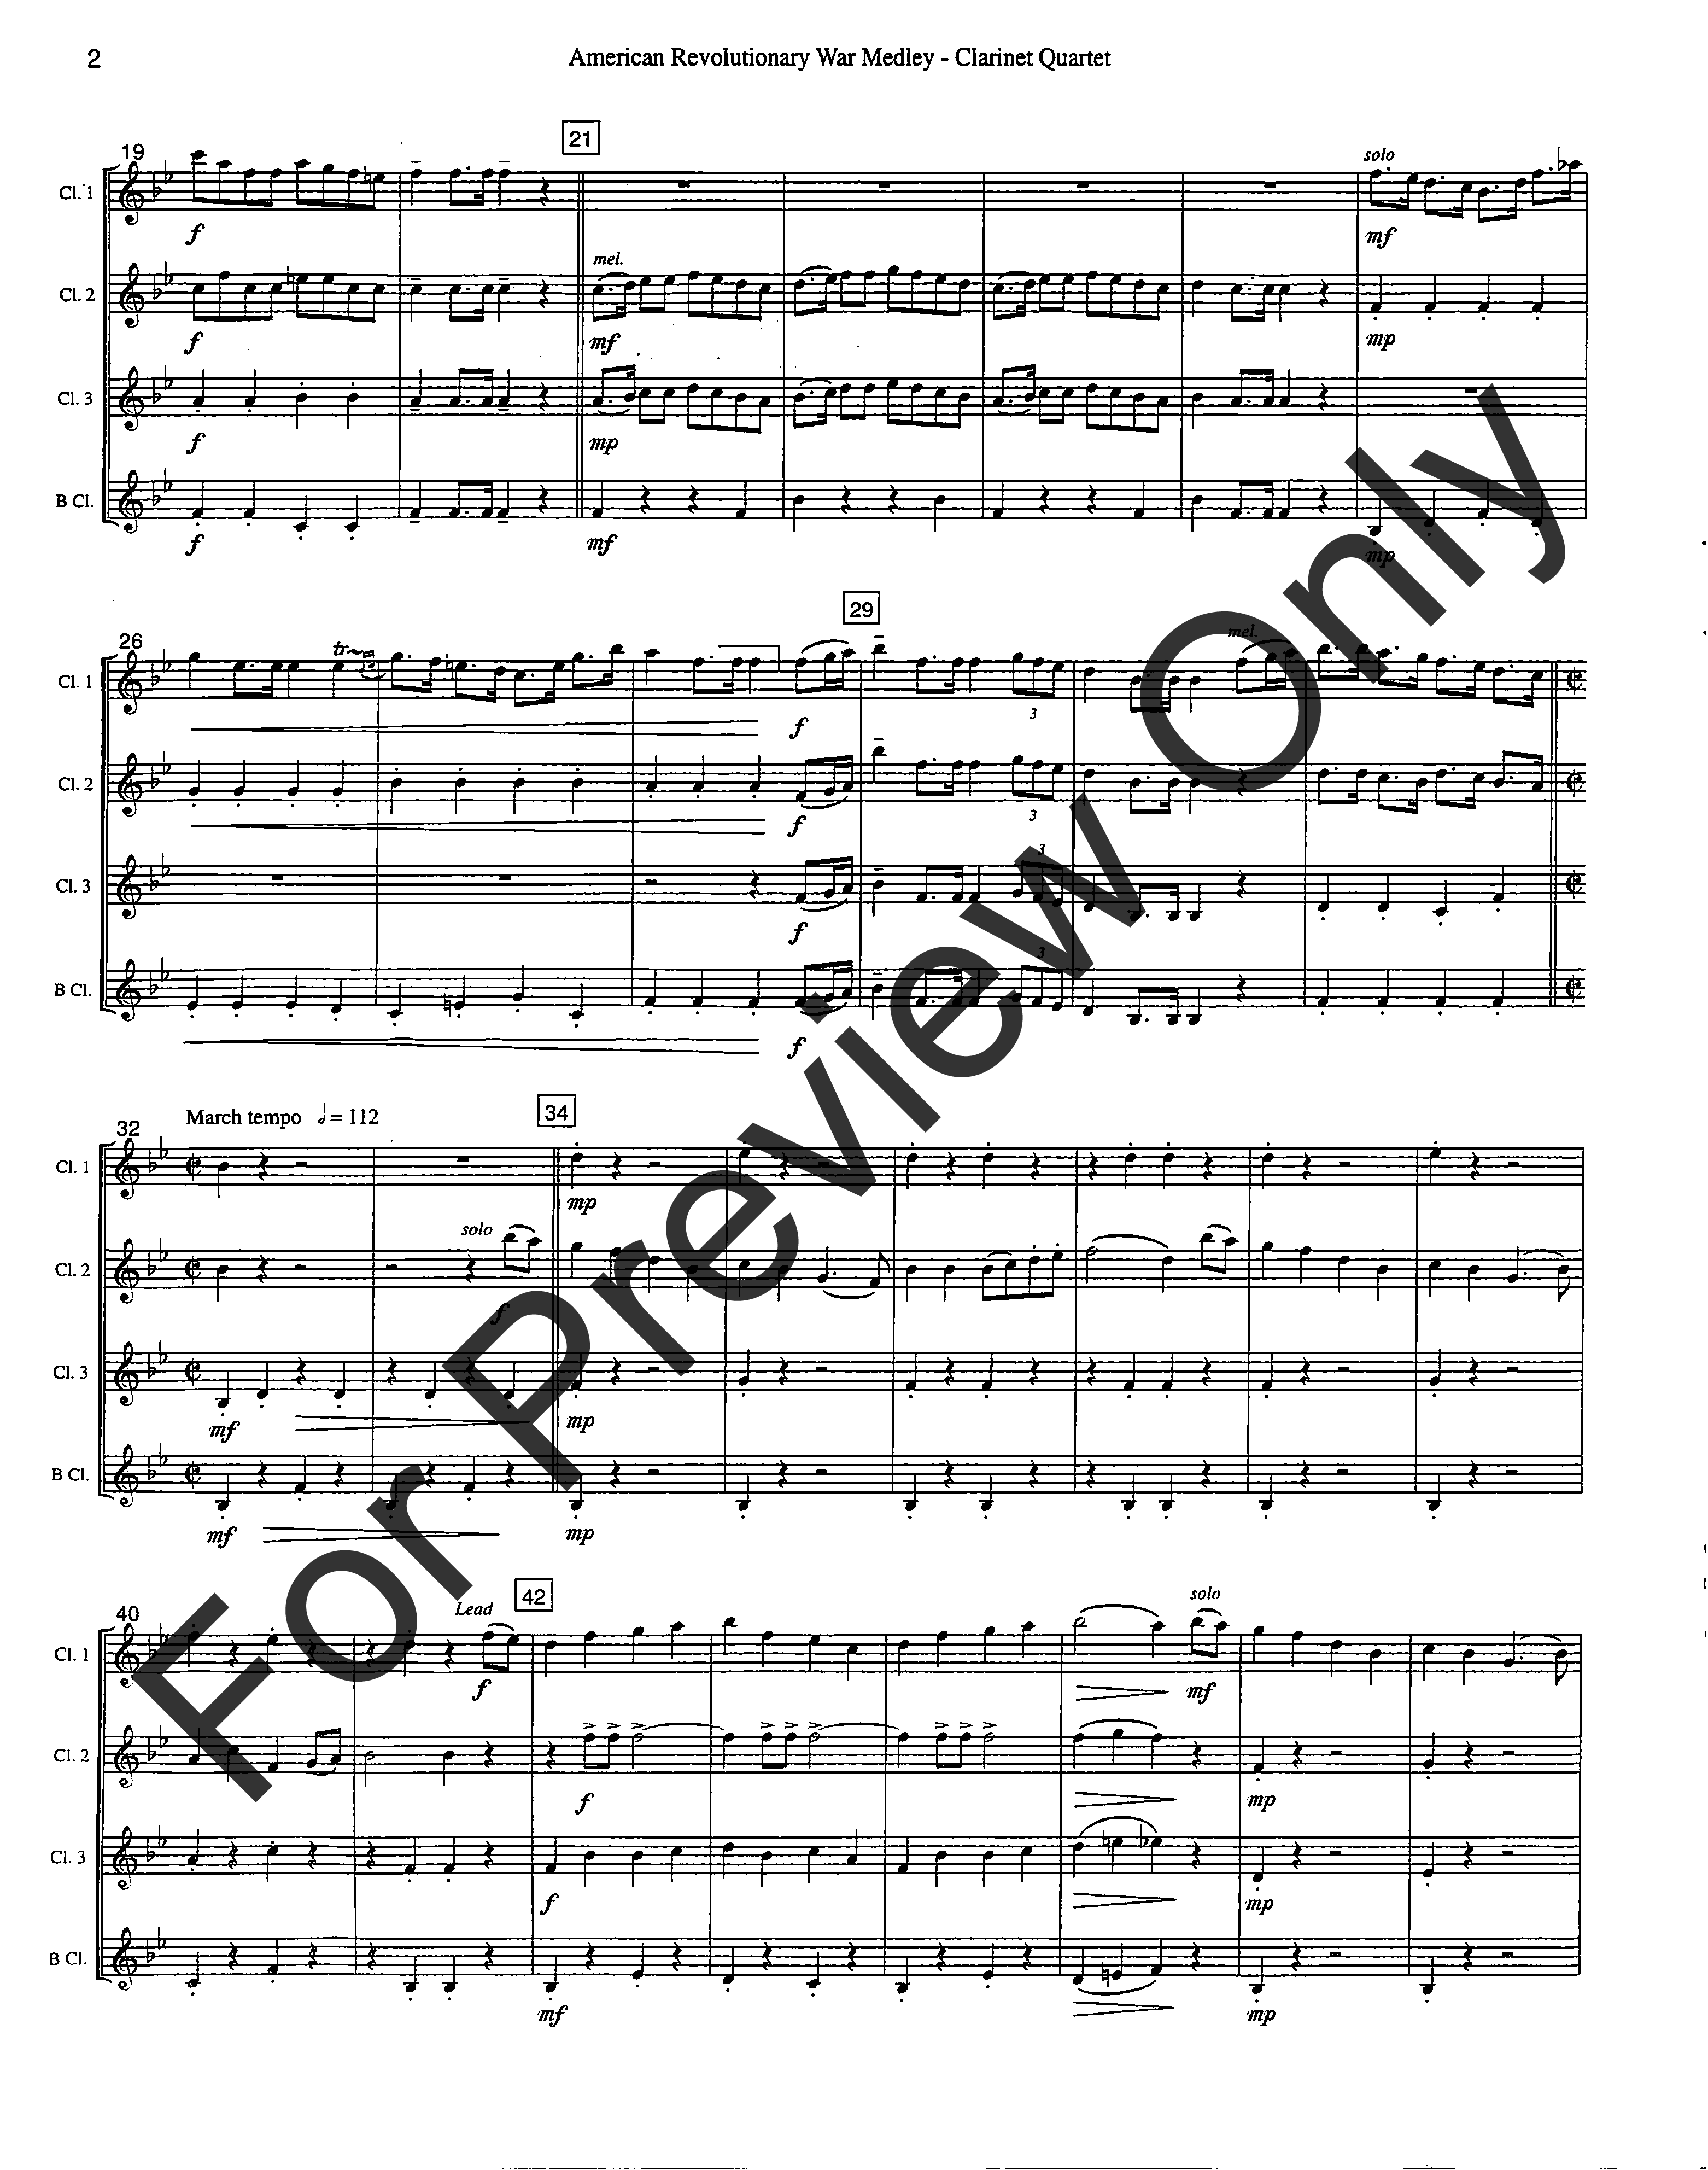 American Revolutionary War Medley Clarinet Quartet - opt. bass clarinet for clarinet 4